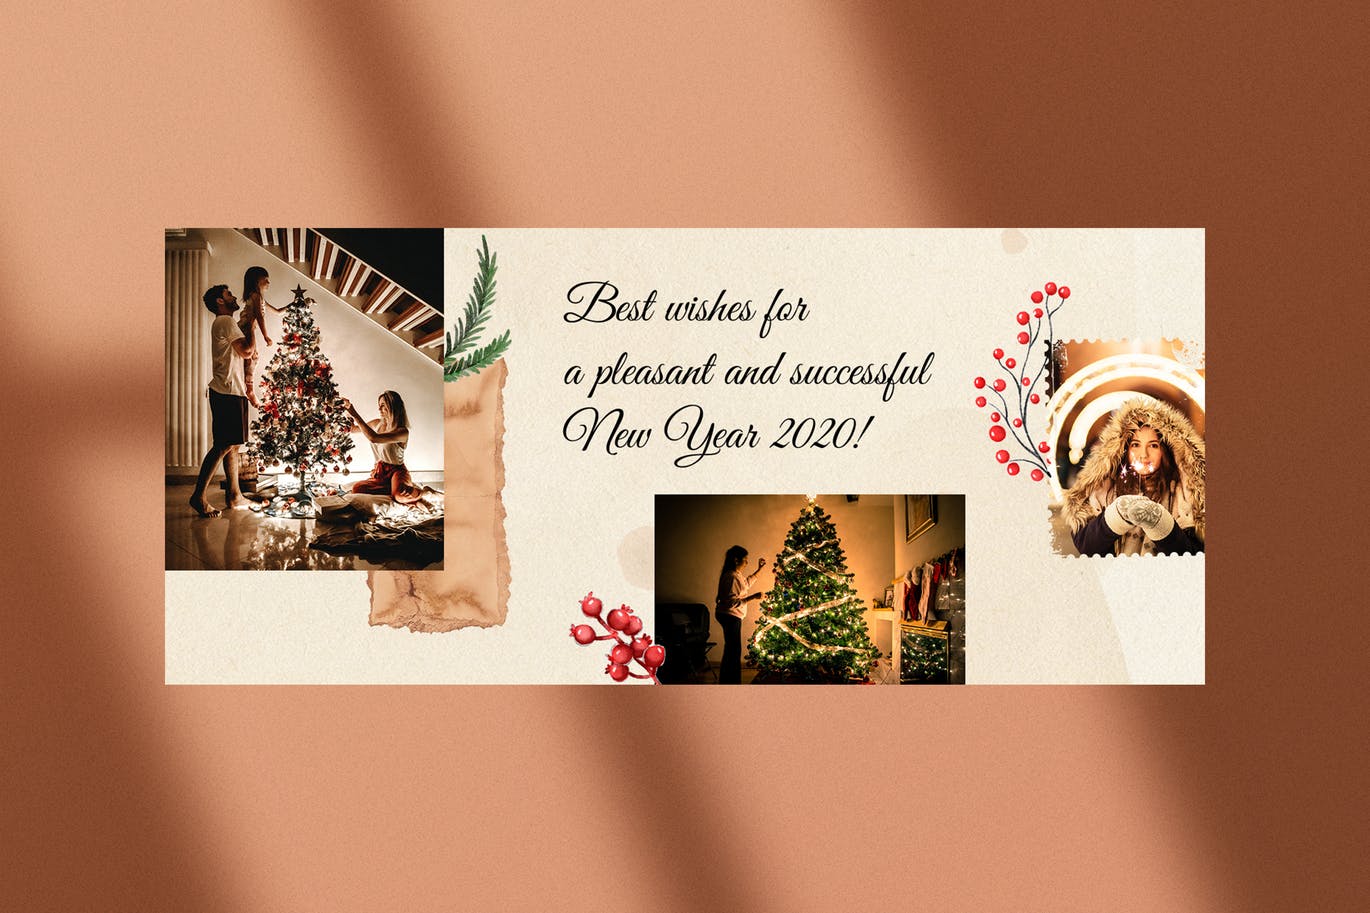 撕纸艺术风格圣诞节主题Facebook社交封面设计模板第一素材精选 Christmas Facebook Covers插图(3)